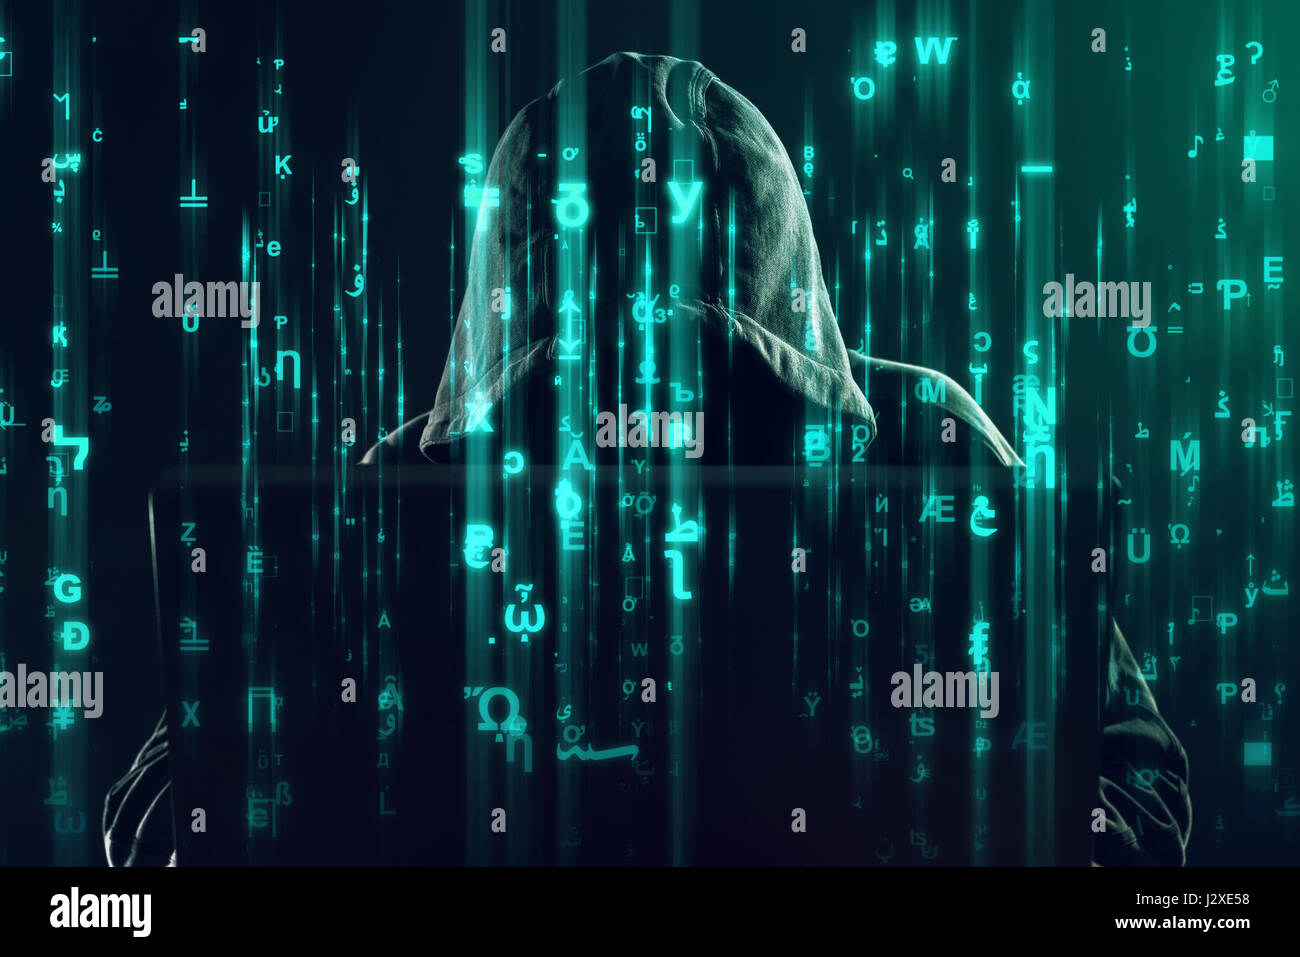 Kapuzen unkenntlich Hacker und Cyber-kriminellen, die Arbeiten am Laptop, Programmierung Fehler und Viren für Computer, ist Matrix wie Code Bild überlagern. Stockfoto